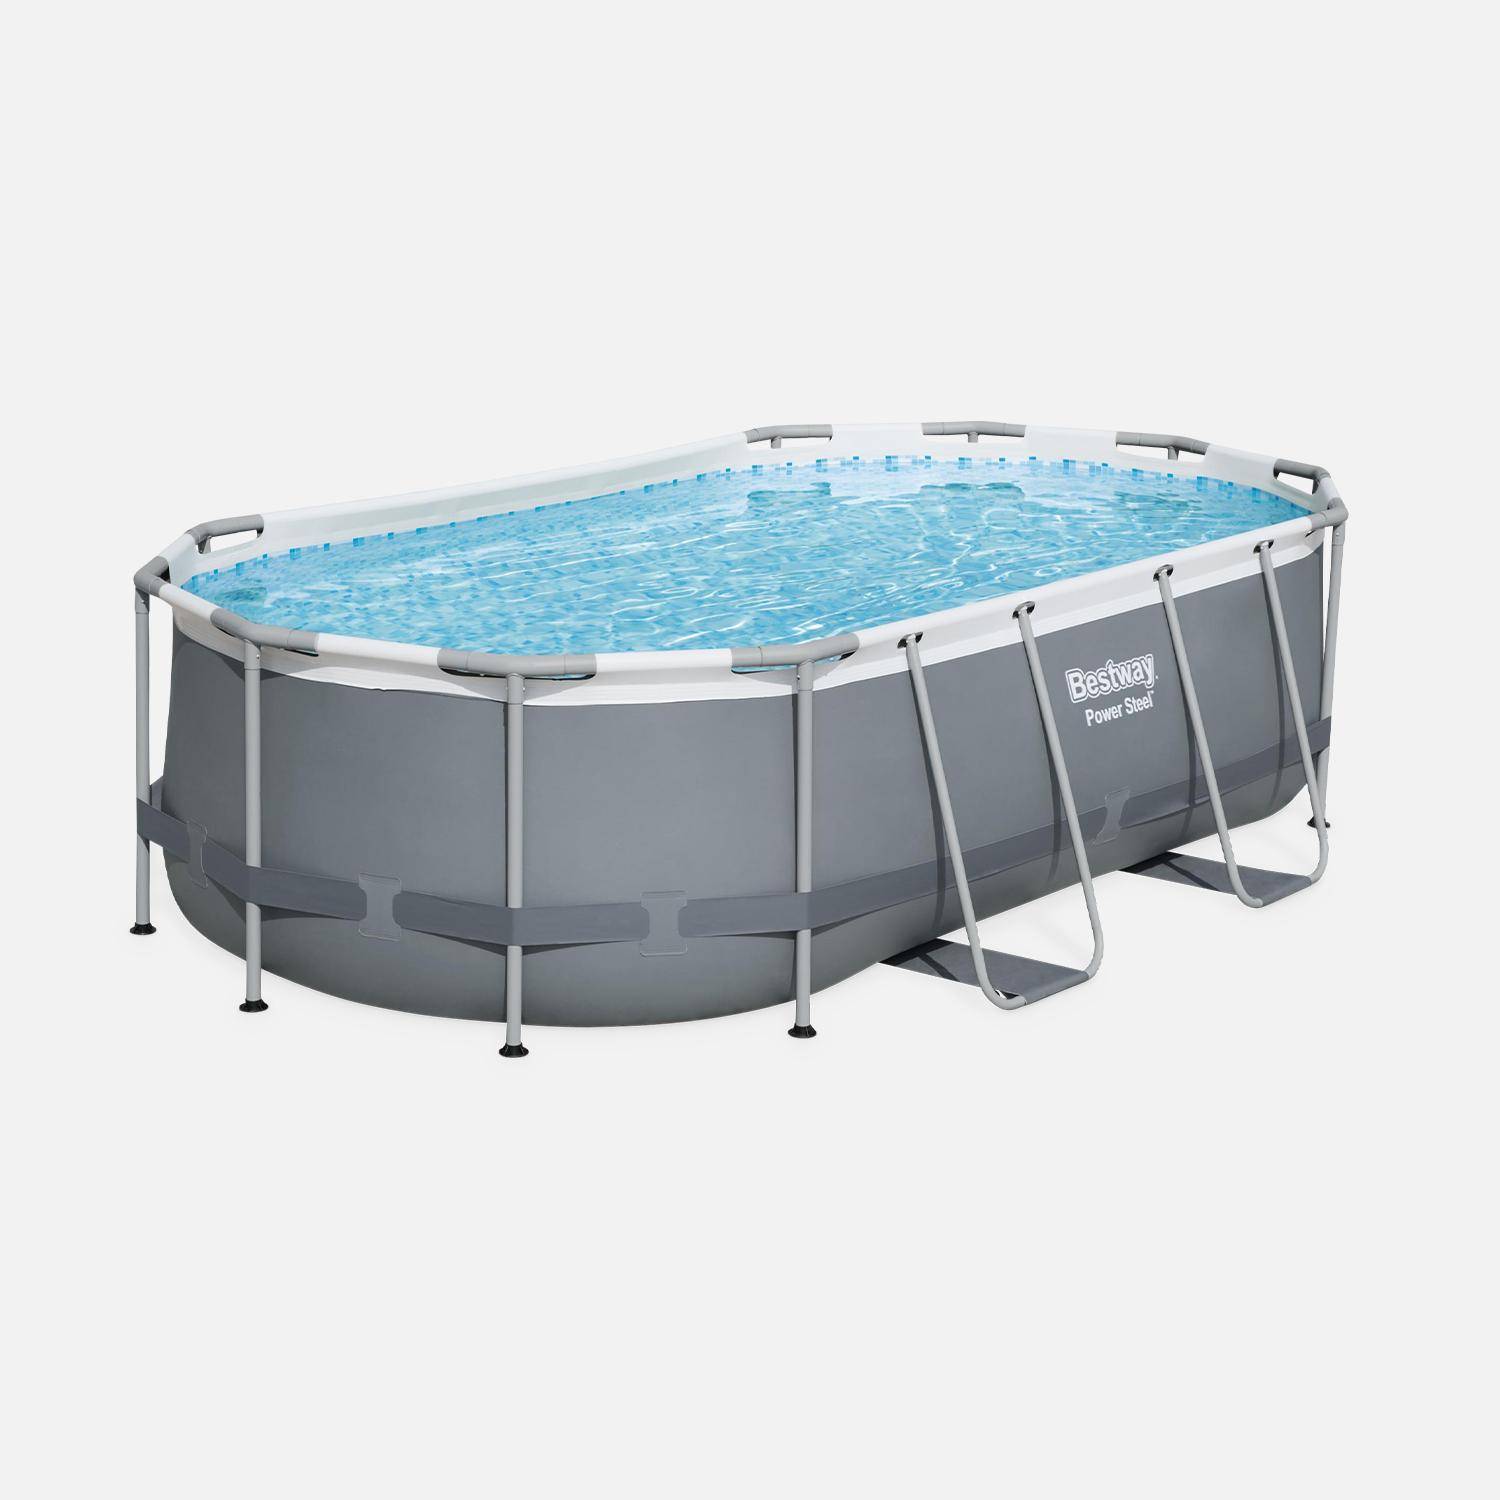 BESTWAY Kit completo per piscina - Grigio Spinelle - piscina tubolare ovale 4x2 m, pompa filtro, scaletta e kit di riparazione inclusi,sweeek,Photo2